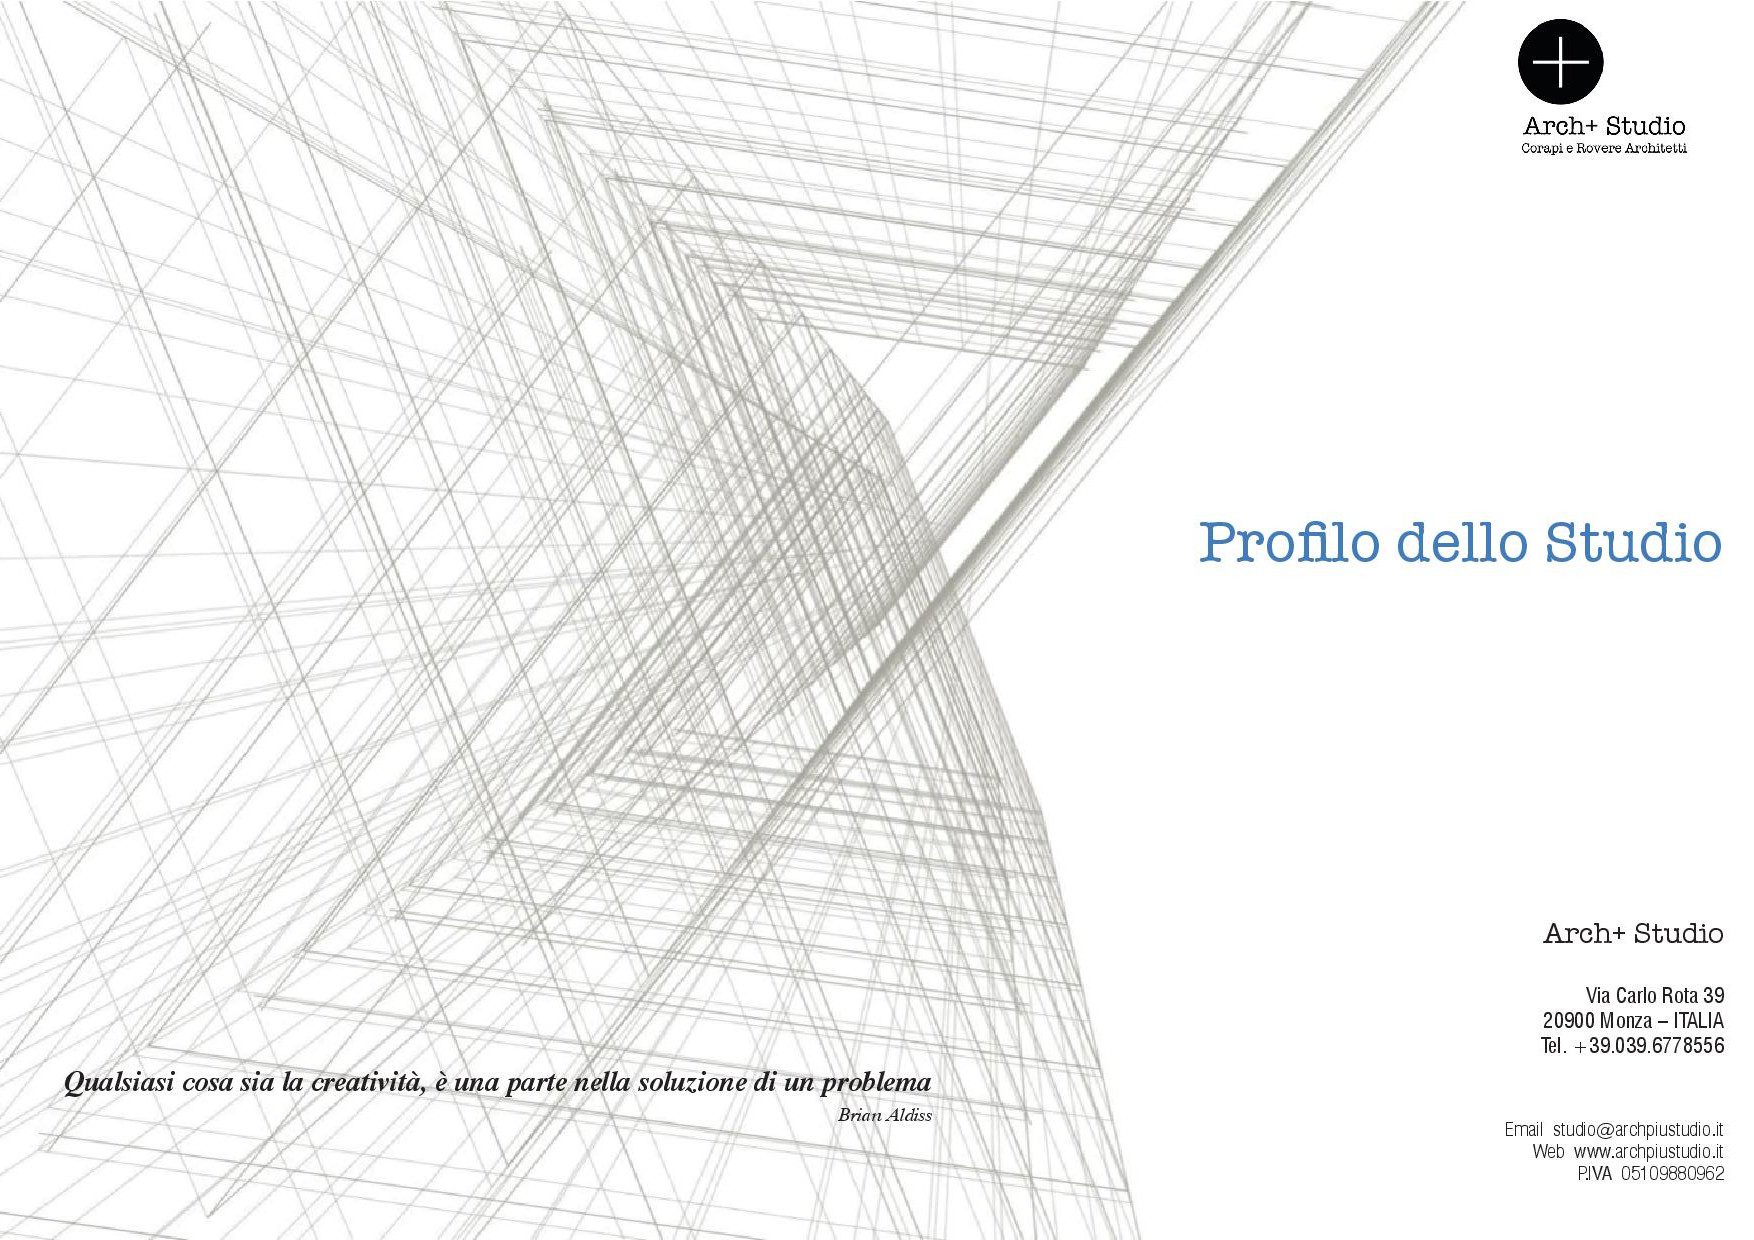 Profilo - Arch+ Studio